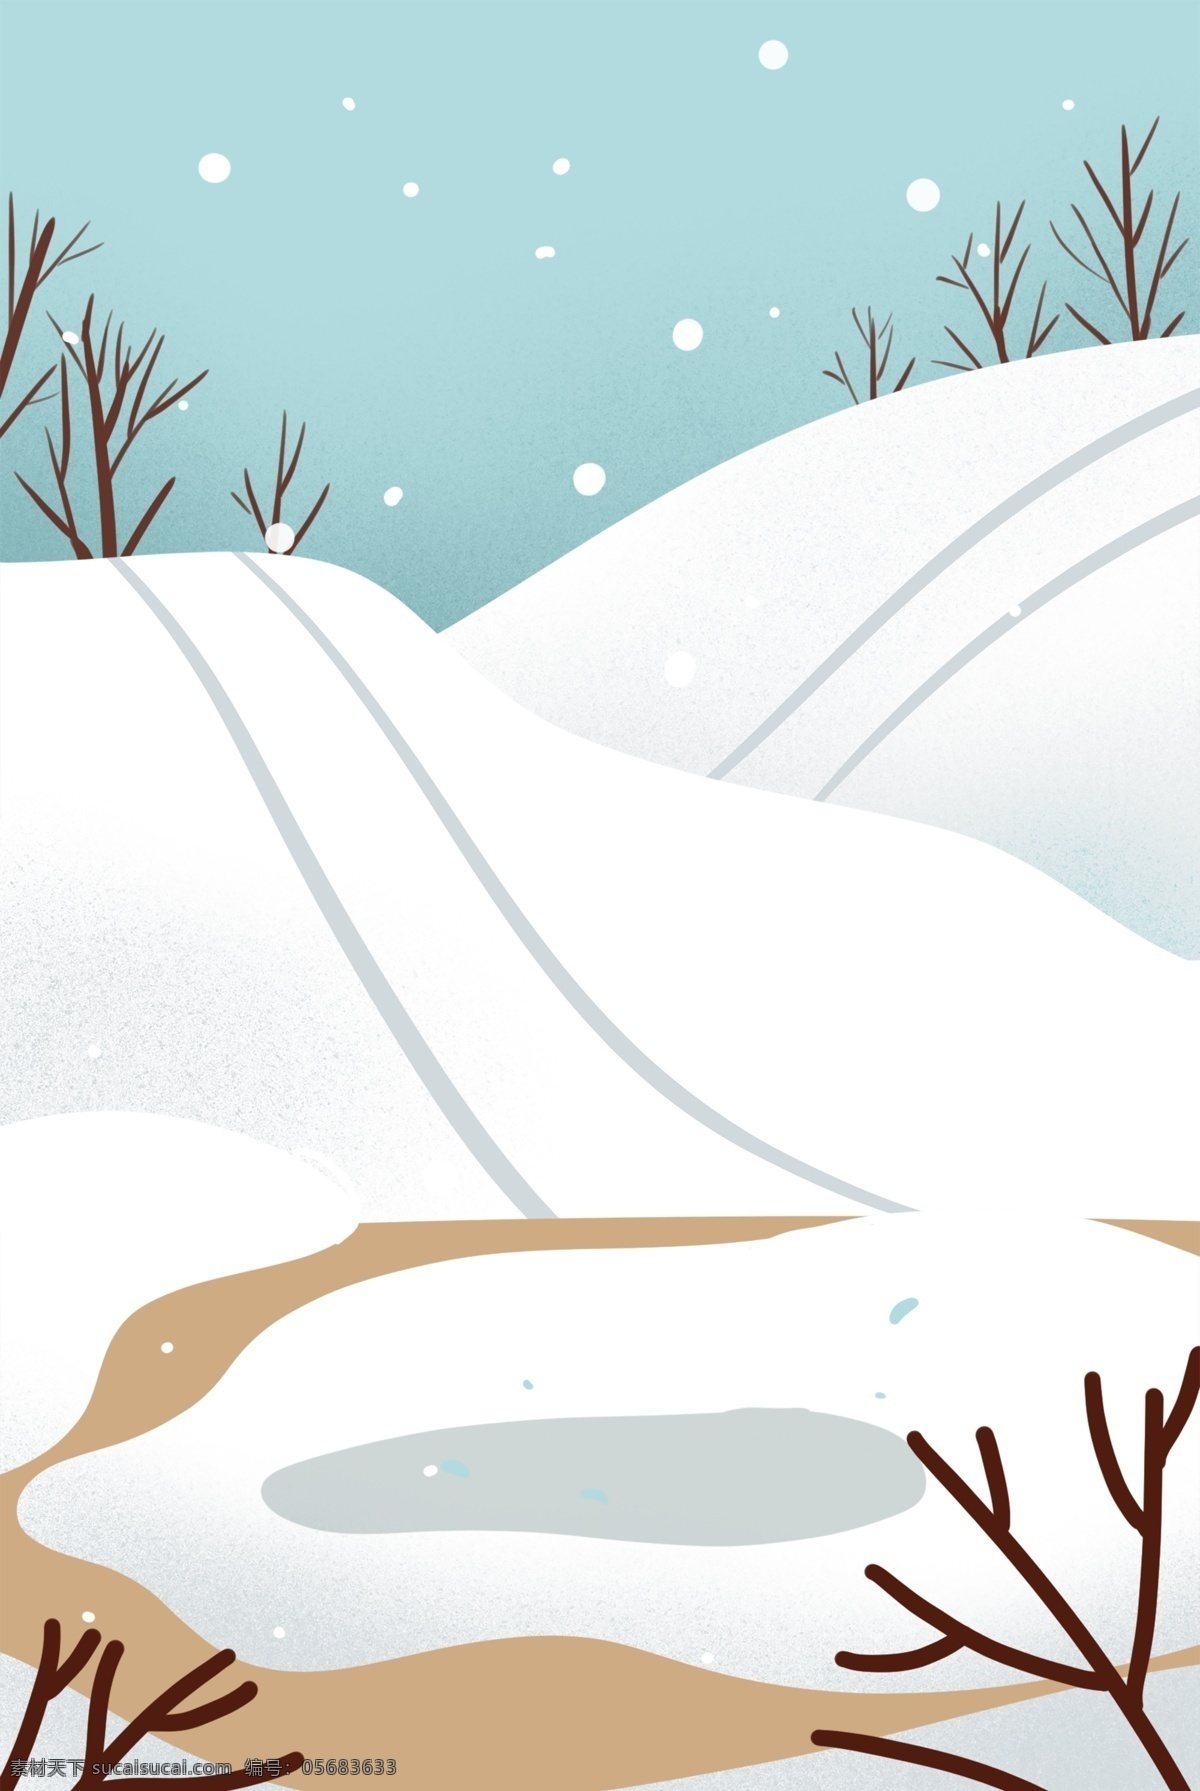 手绘 插画 冬天 雪天 雪山 风景 插画风 下雪 路滑 冬季 瑞雪 化雪 融雪 滑雪